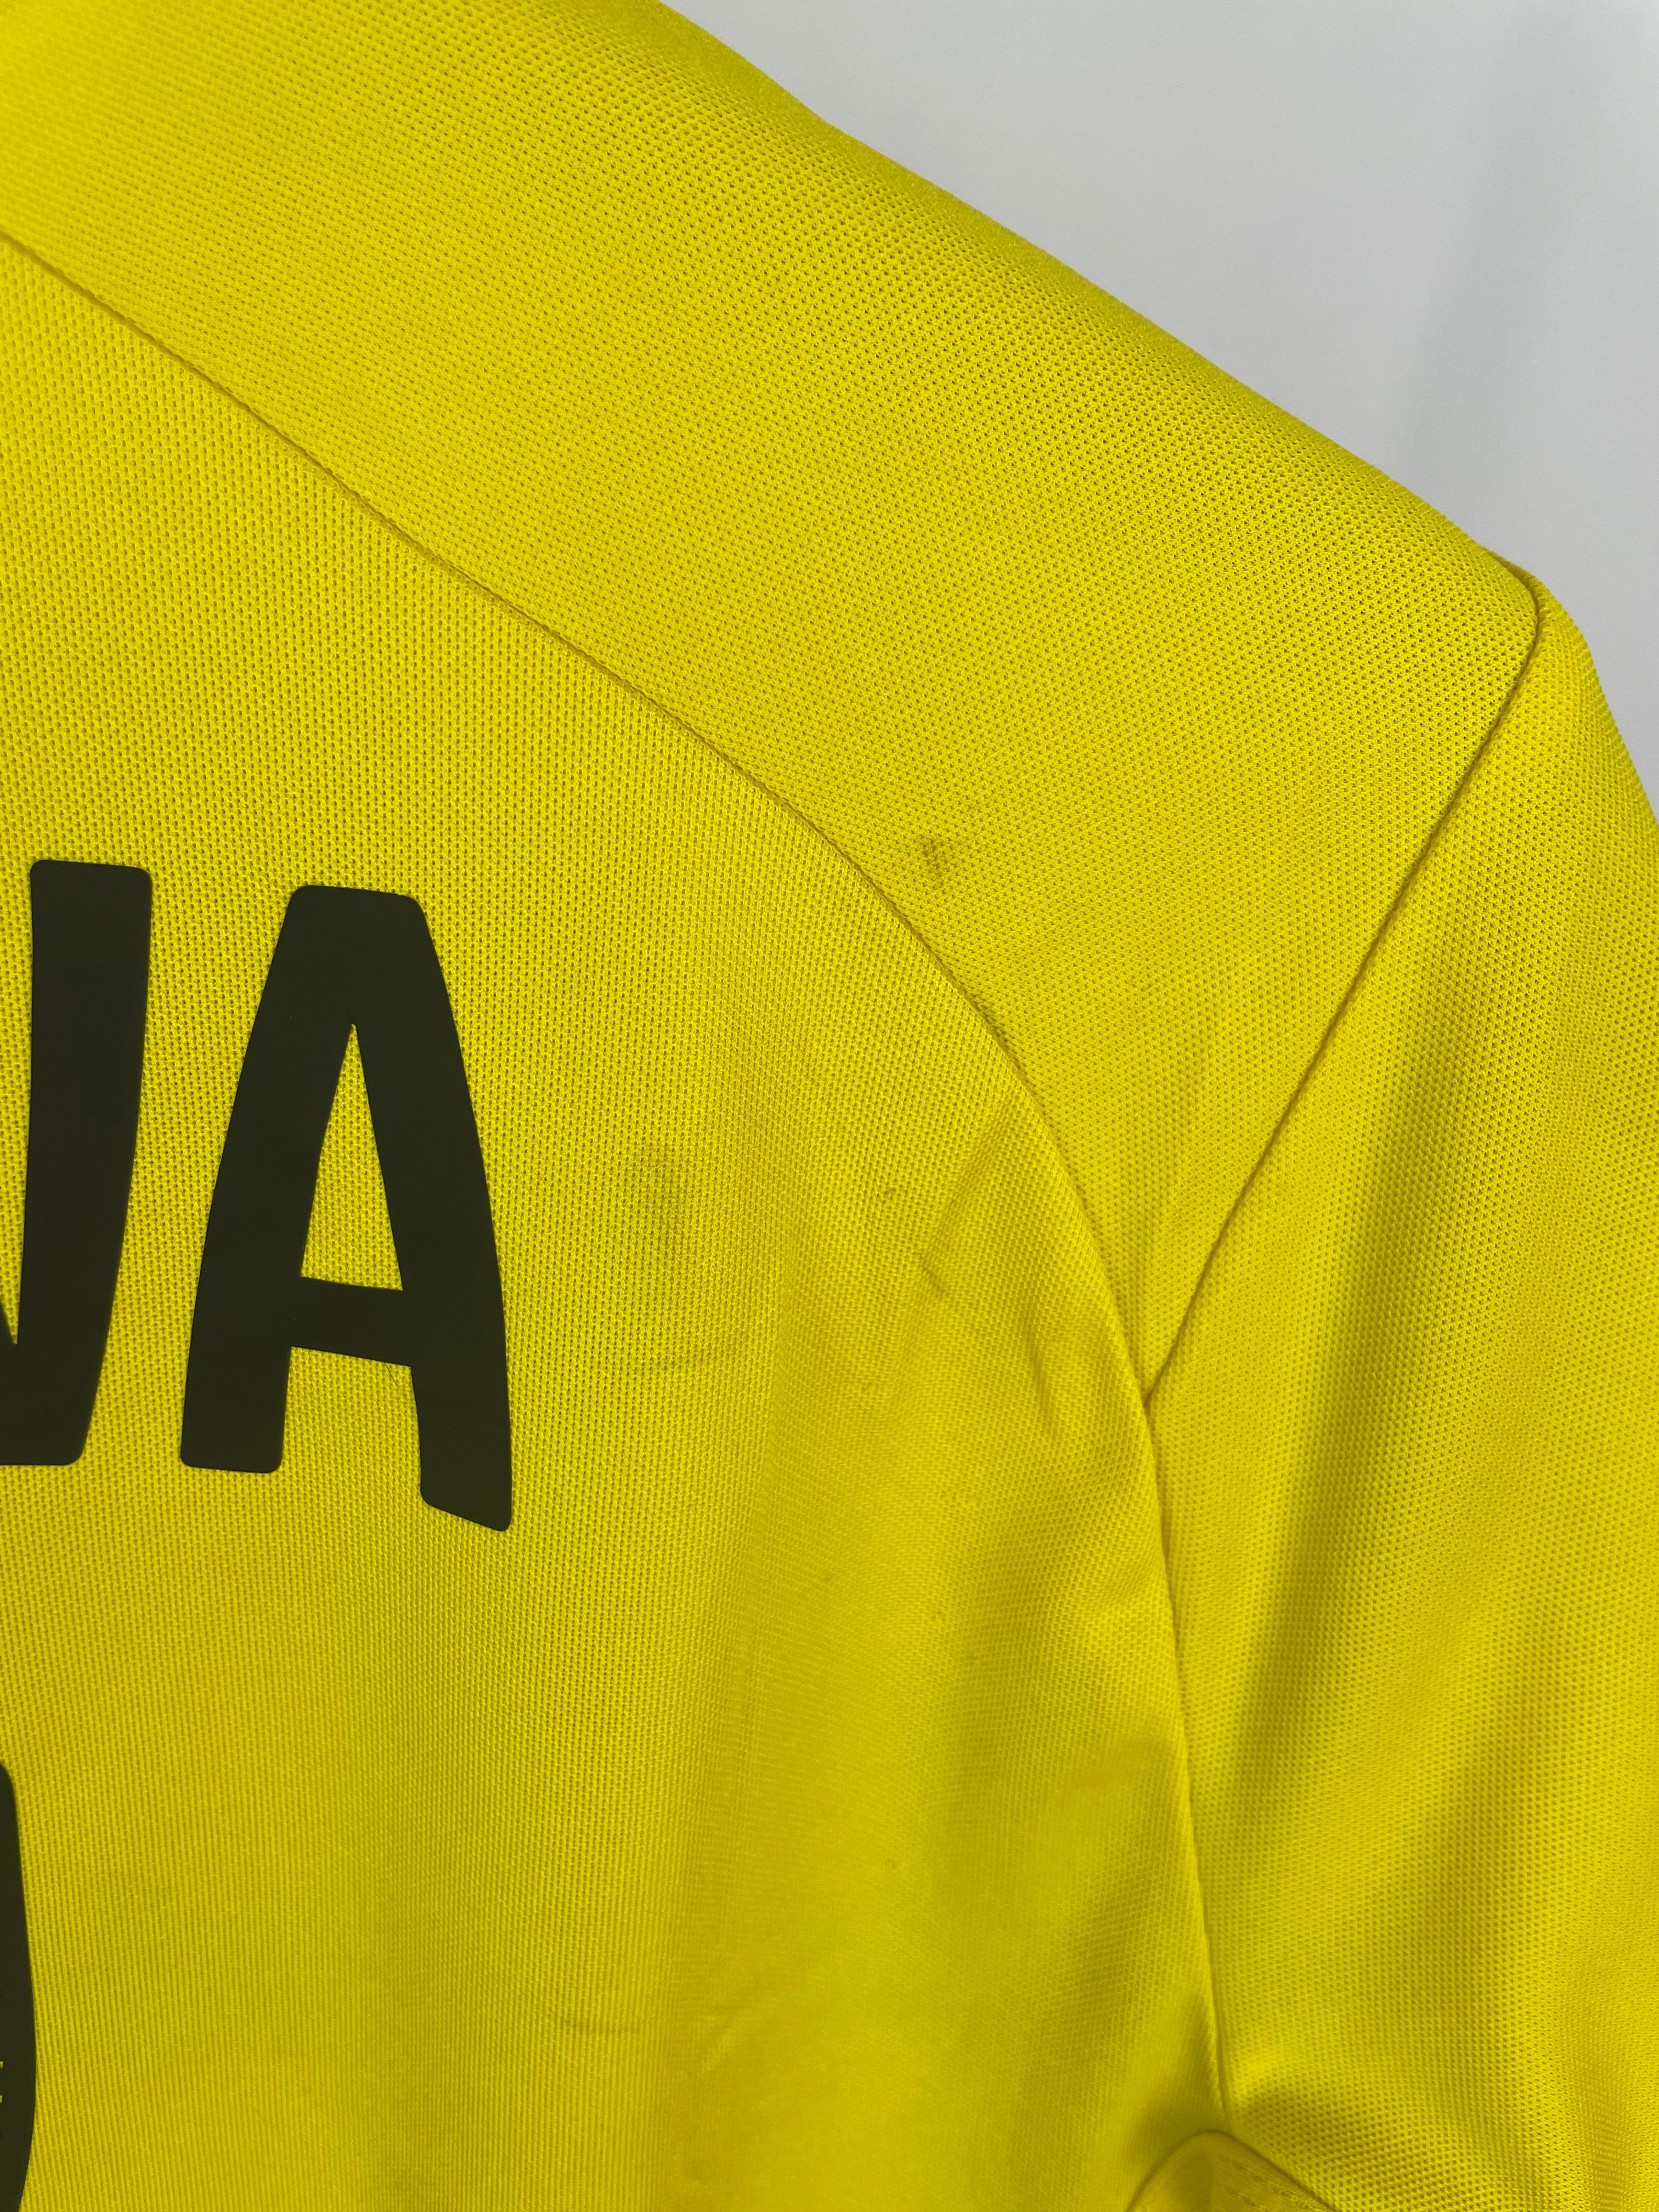 Shinji Kagawa Dortmund 14/15 hjemmebanetrøje - S